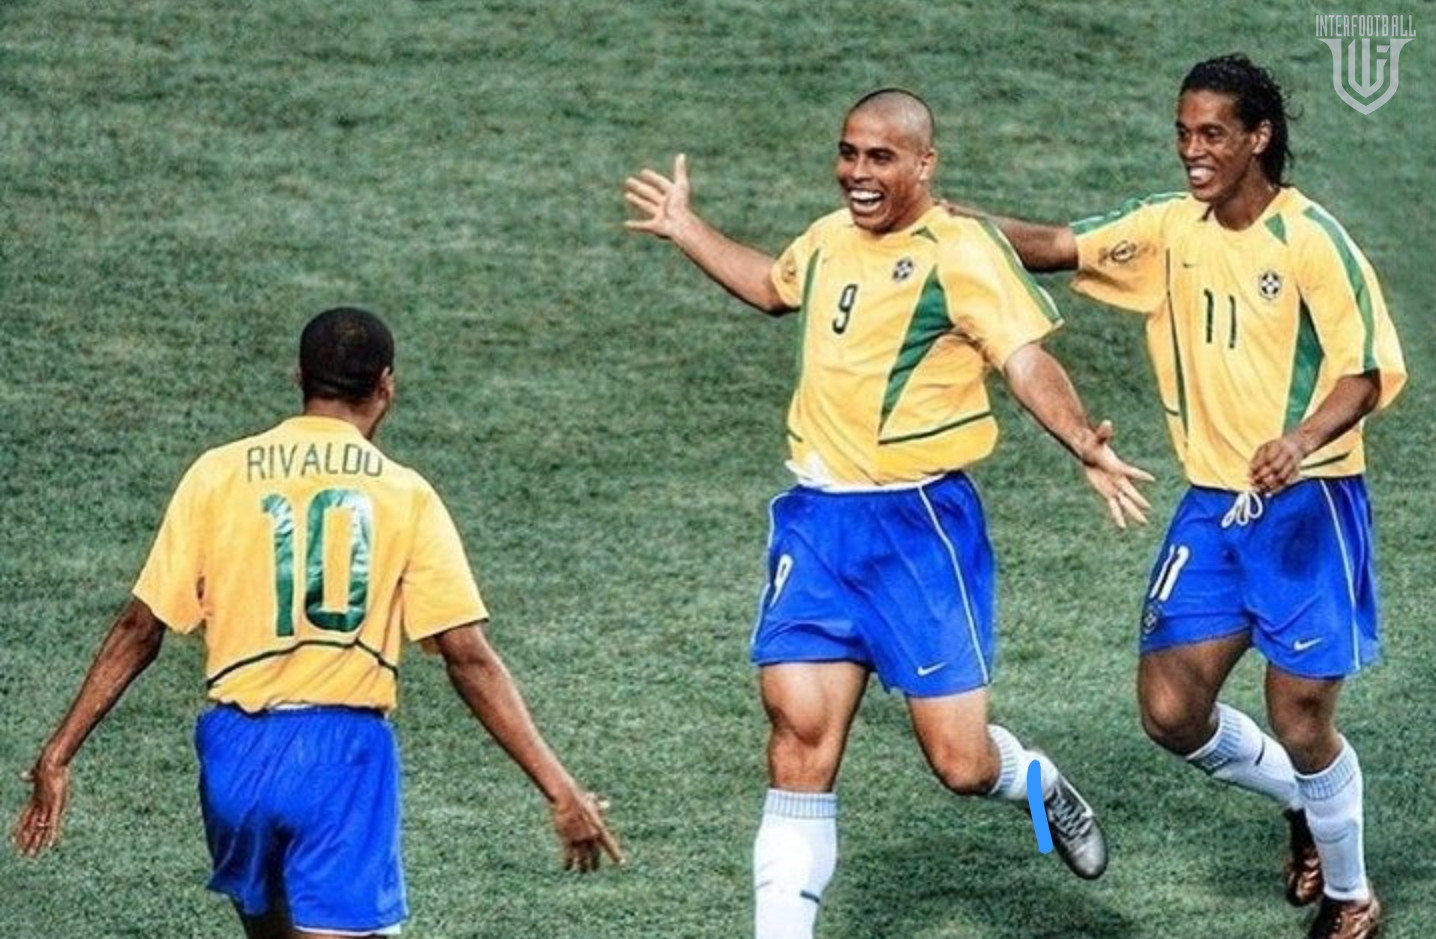 Պատմության լավագույն բրազիլացի ֆուտբոլիստներն` ըստ FourFourTwo-ի